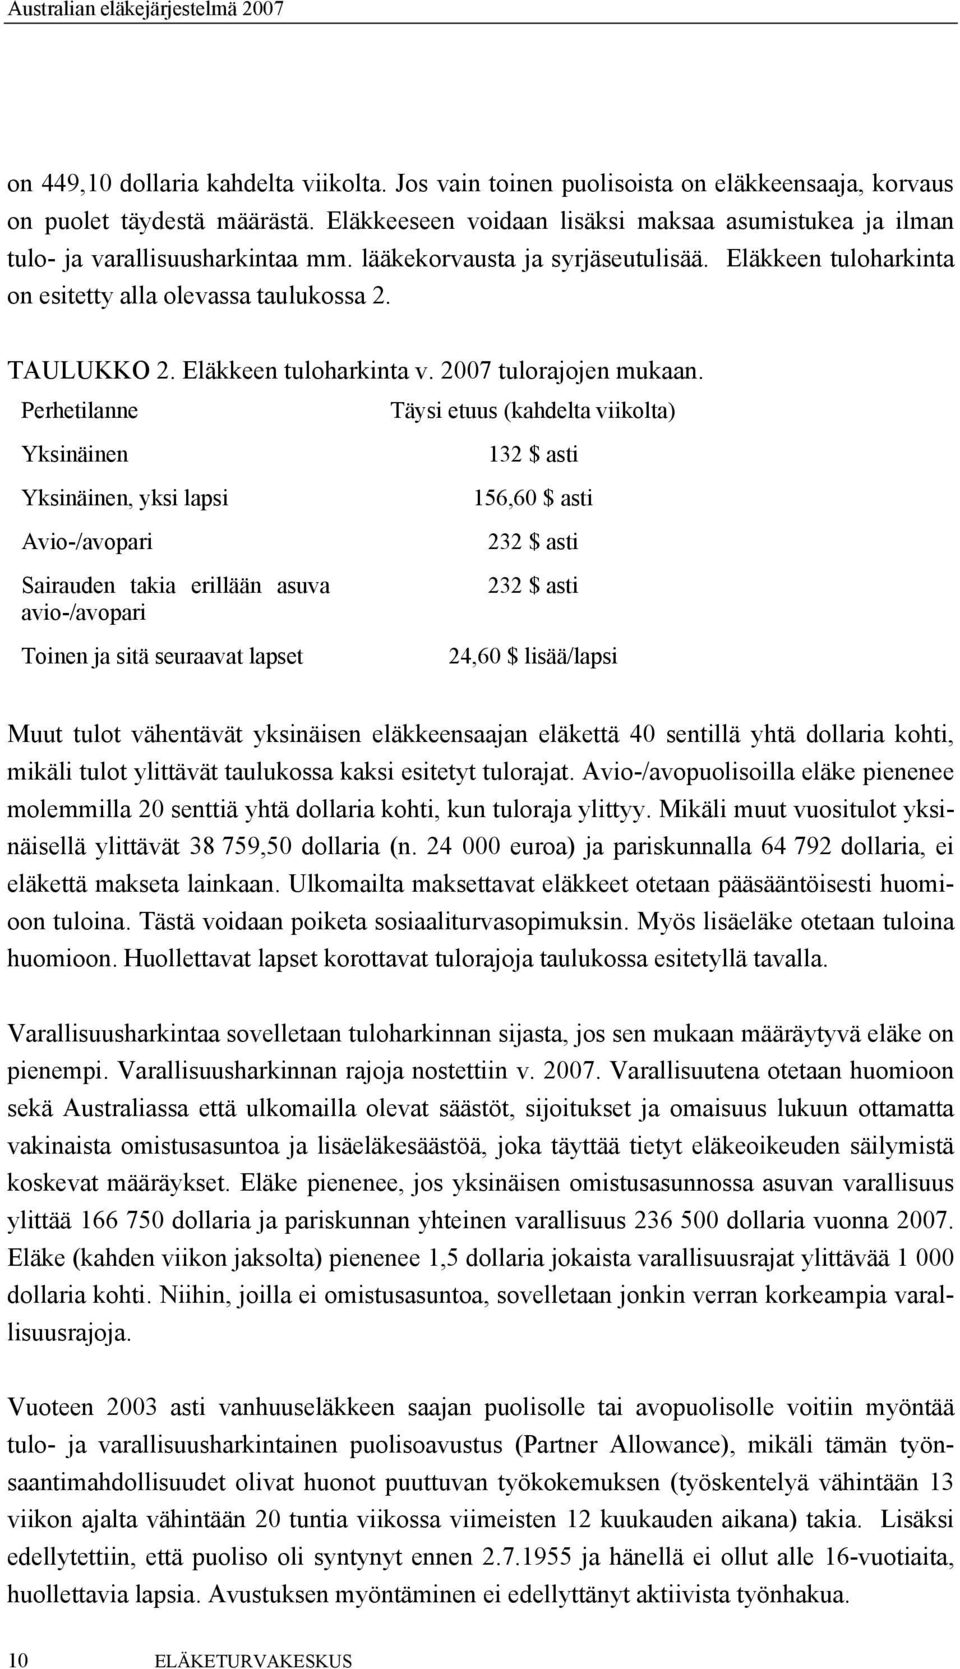 Eläkkeen tuloharkinta v. 2007 tulorajojen mukaan.